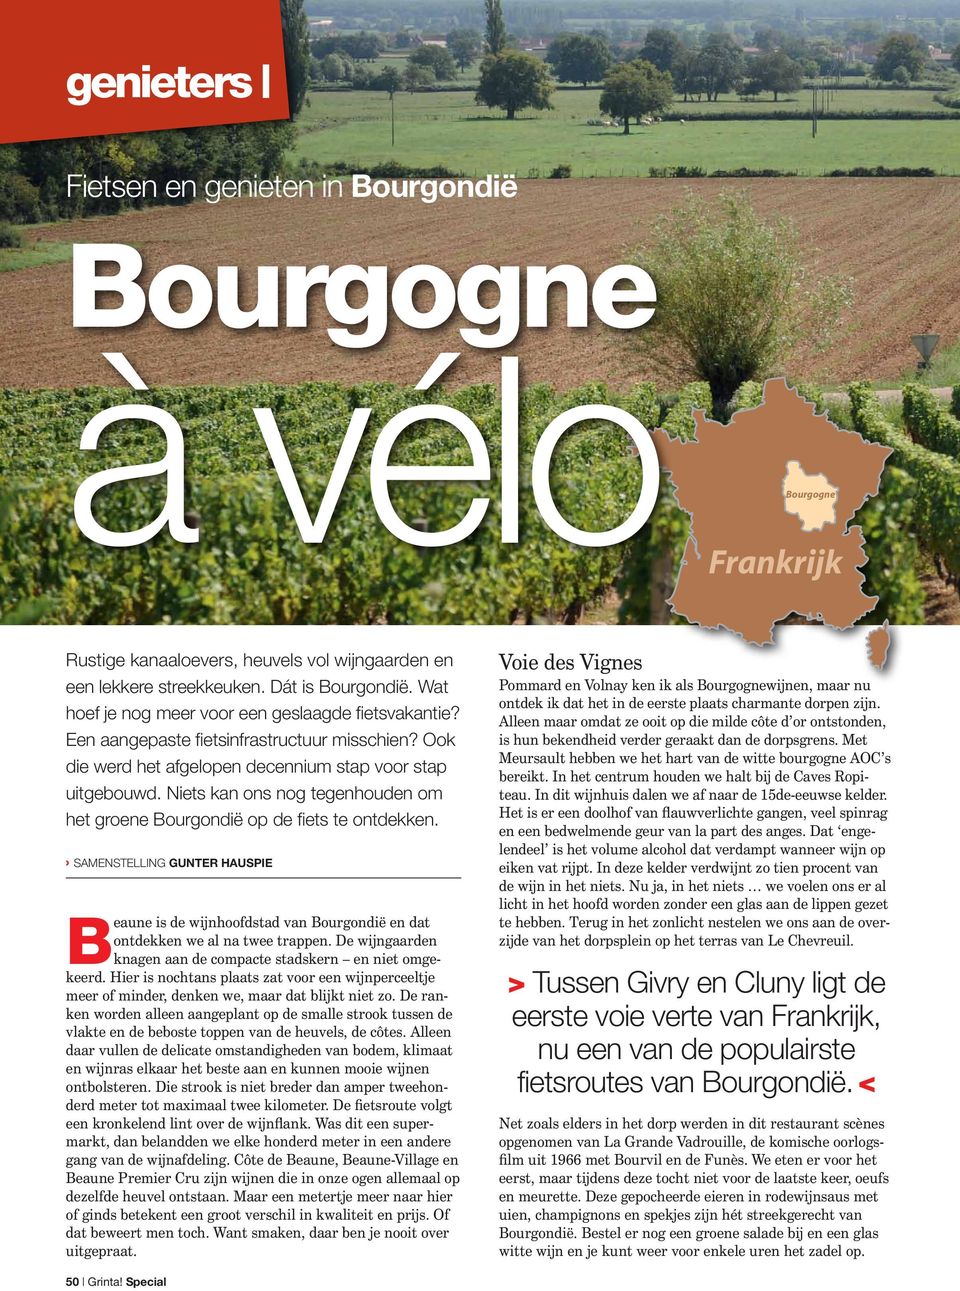 Niets kan ons nog tegenhouden om het groene Bourgondië op de fiets te ontdekken. Samenstelling Gunter Hauspie Beaune is de wijnhoofdstad van Bourgondië en dat ontdekken we al na twee trappen.